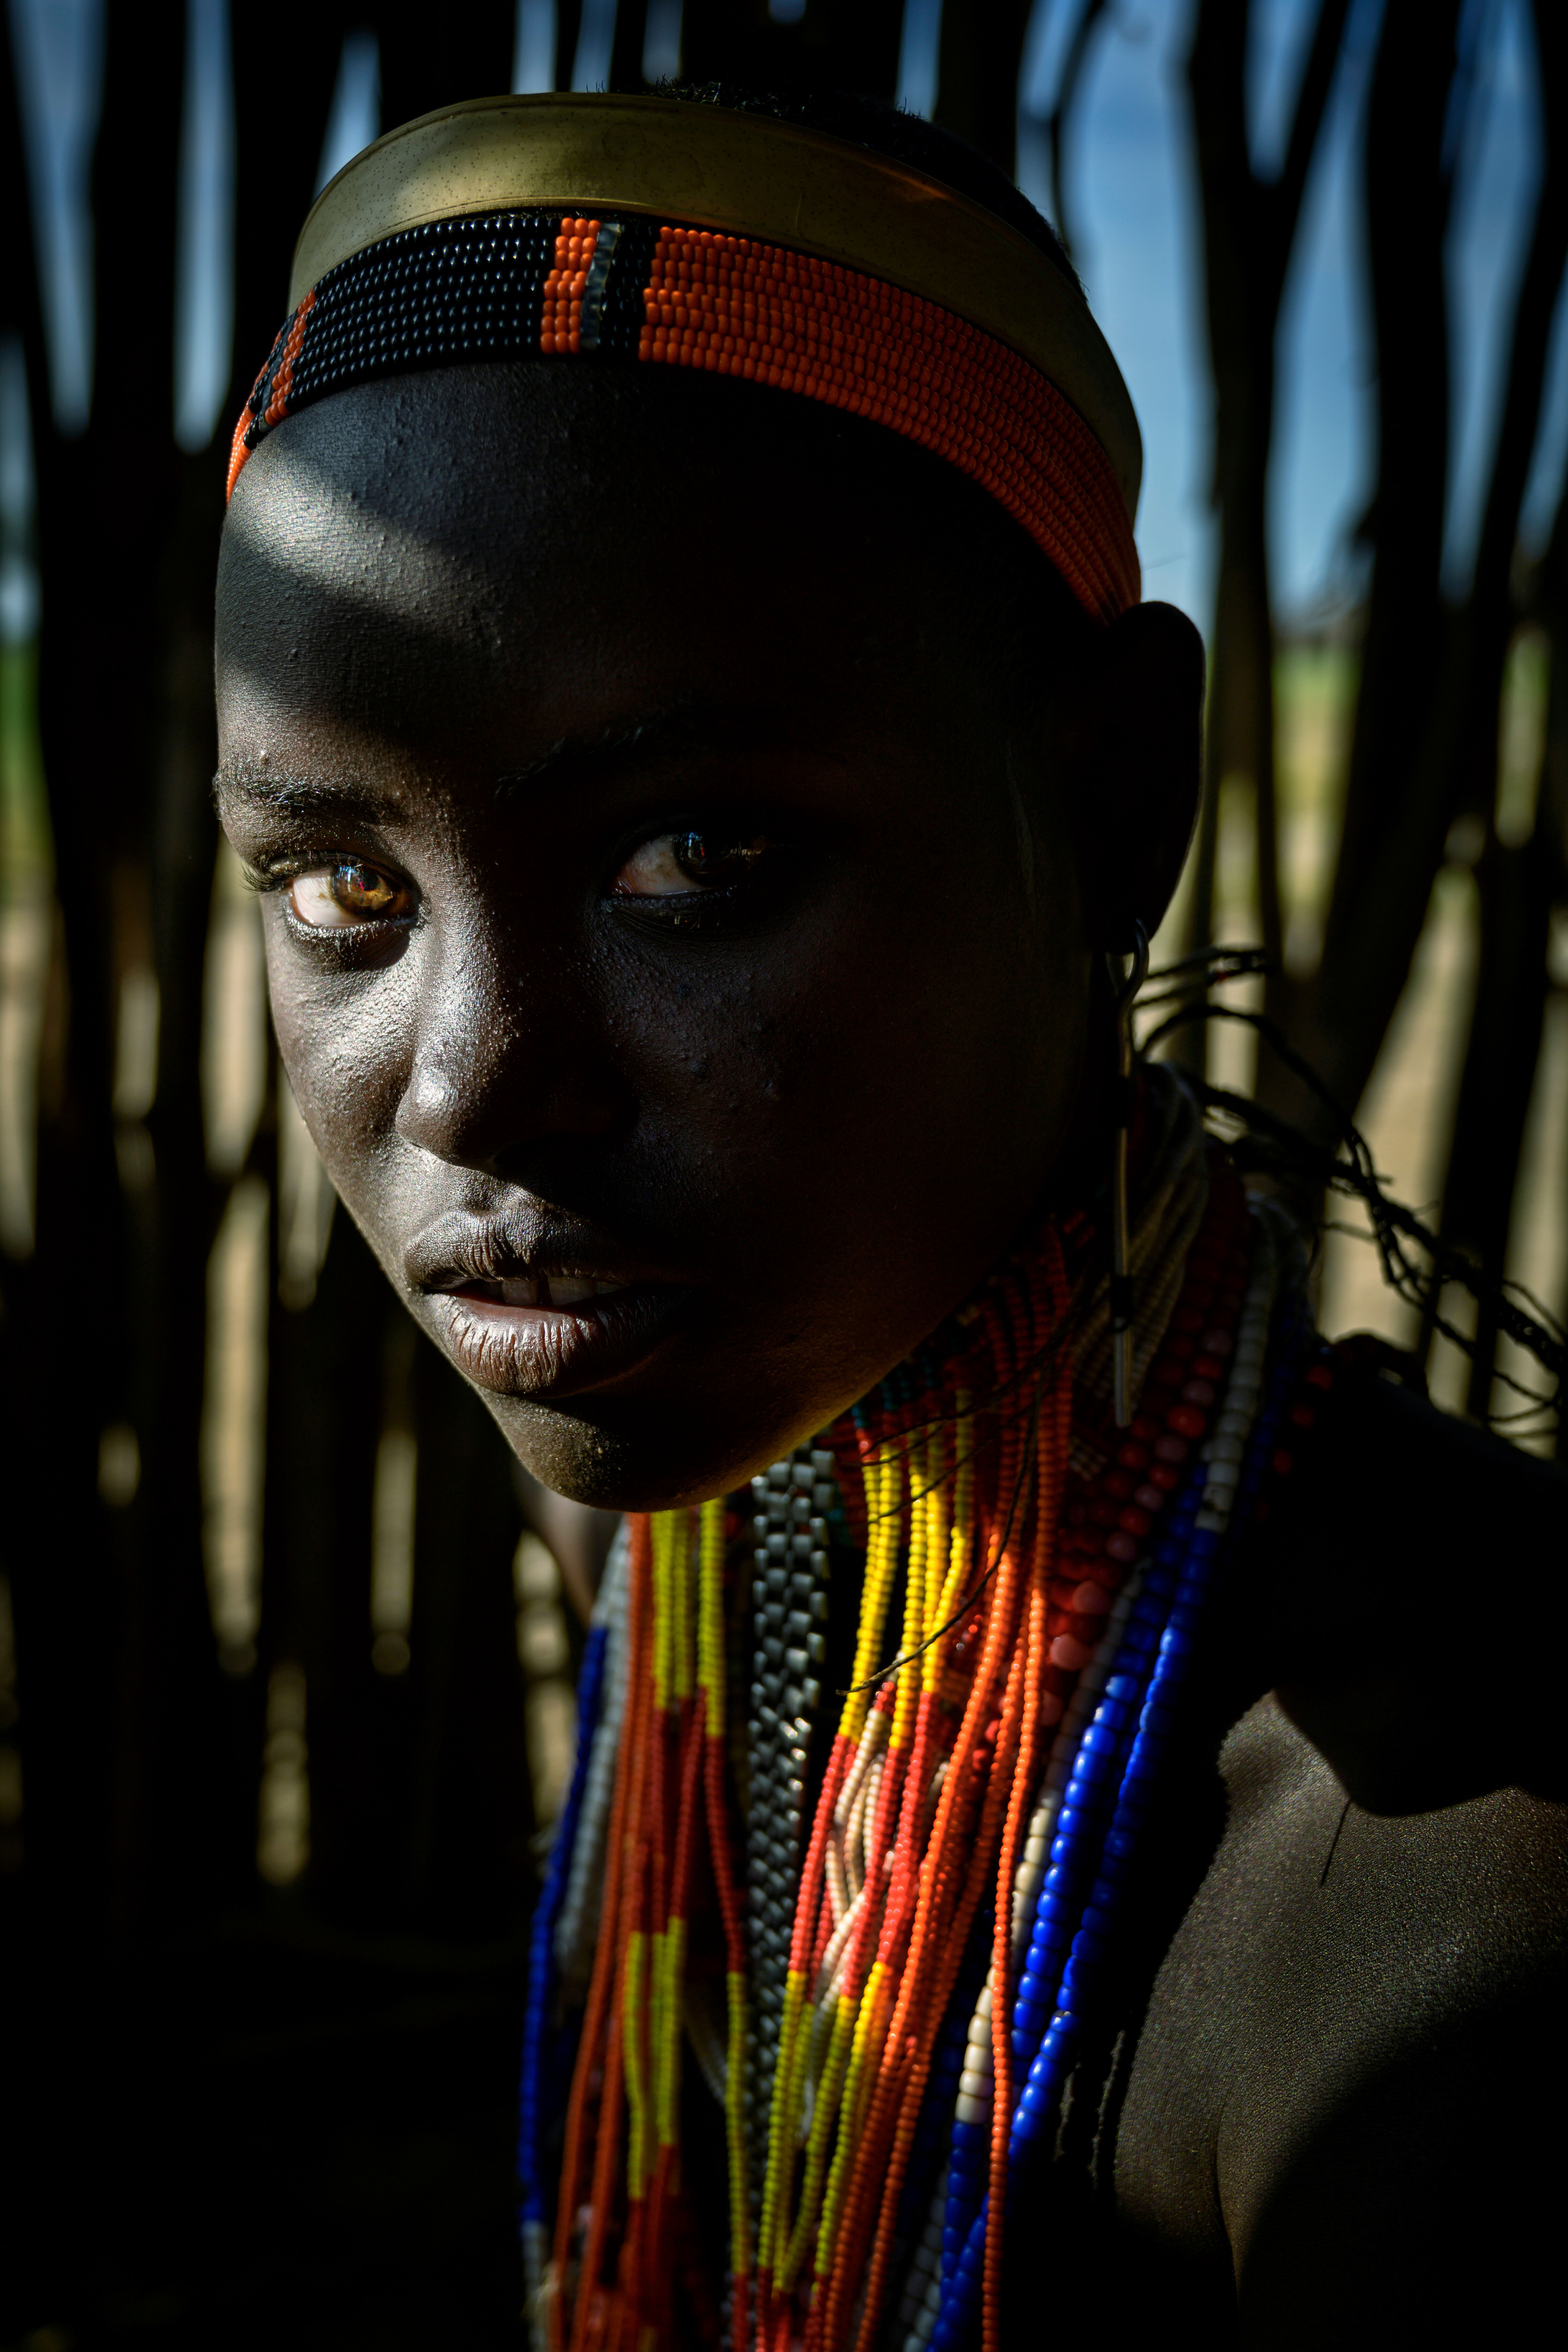 Финалист в категории Люди, 2021. Портрет девушки из племени эрборе в долине реки Омо, Эфиопия. Автор Зай Яр Лин